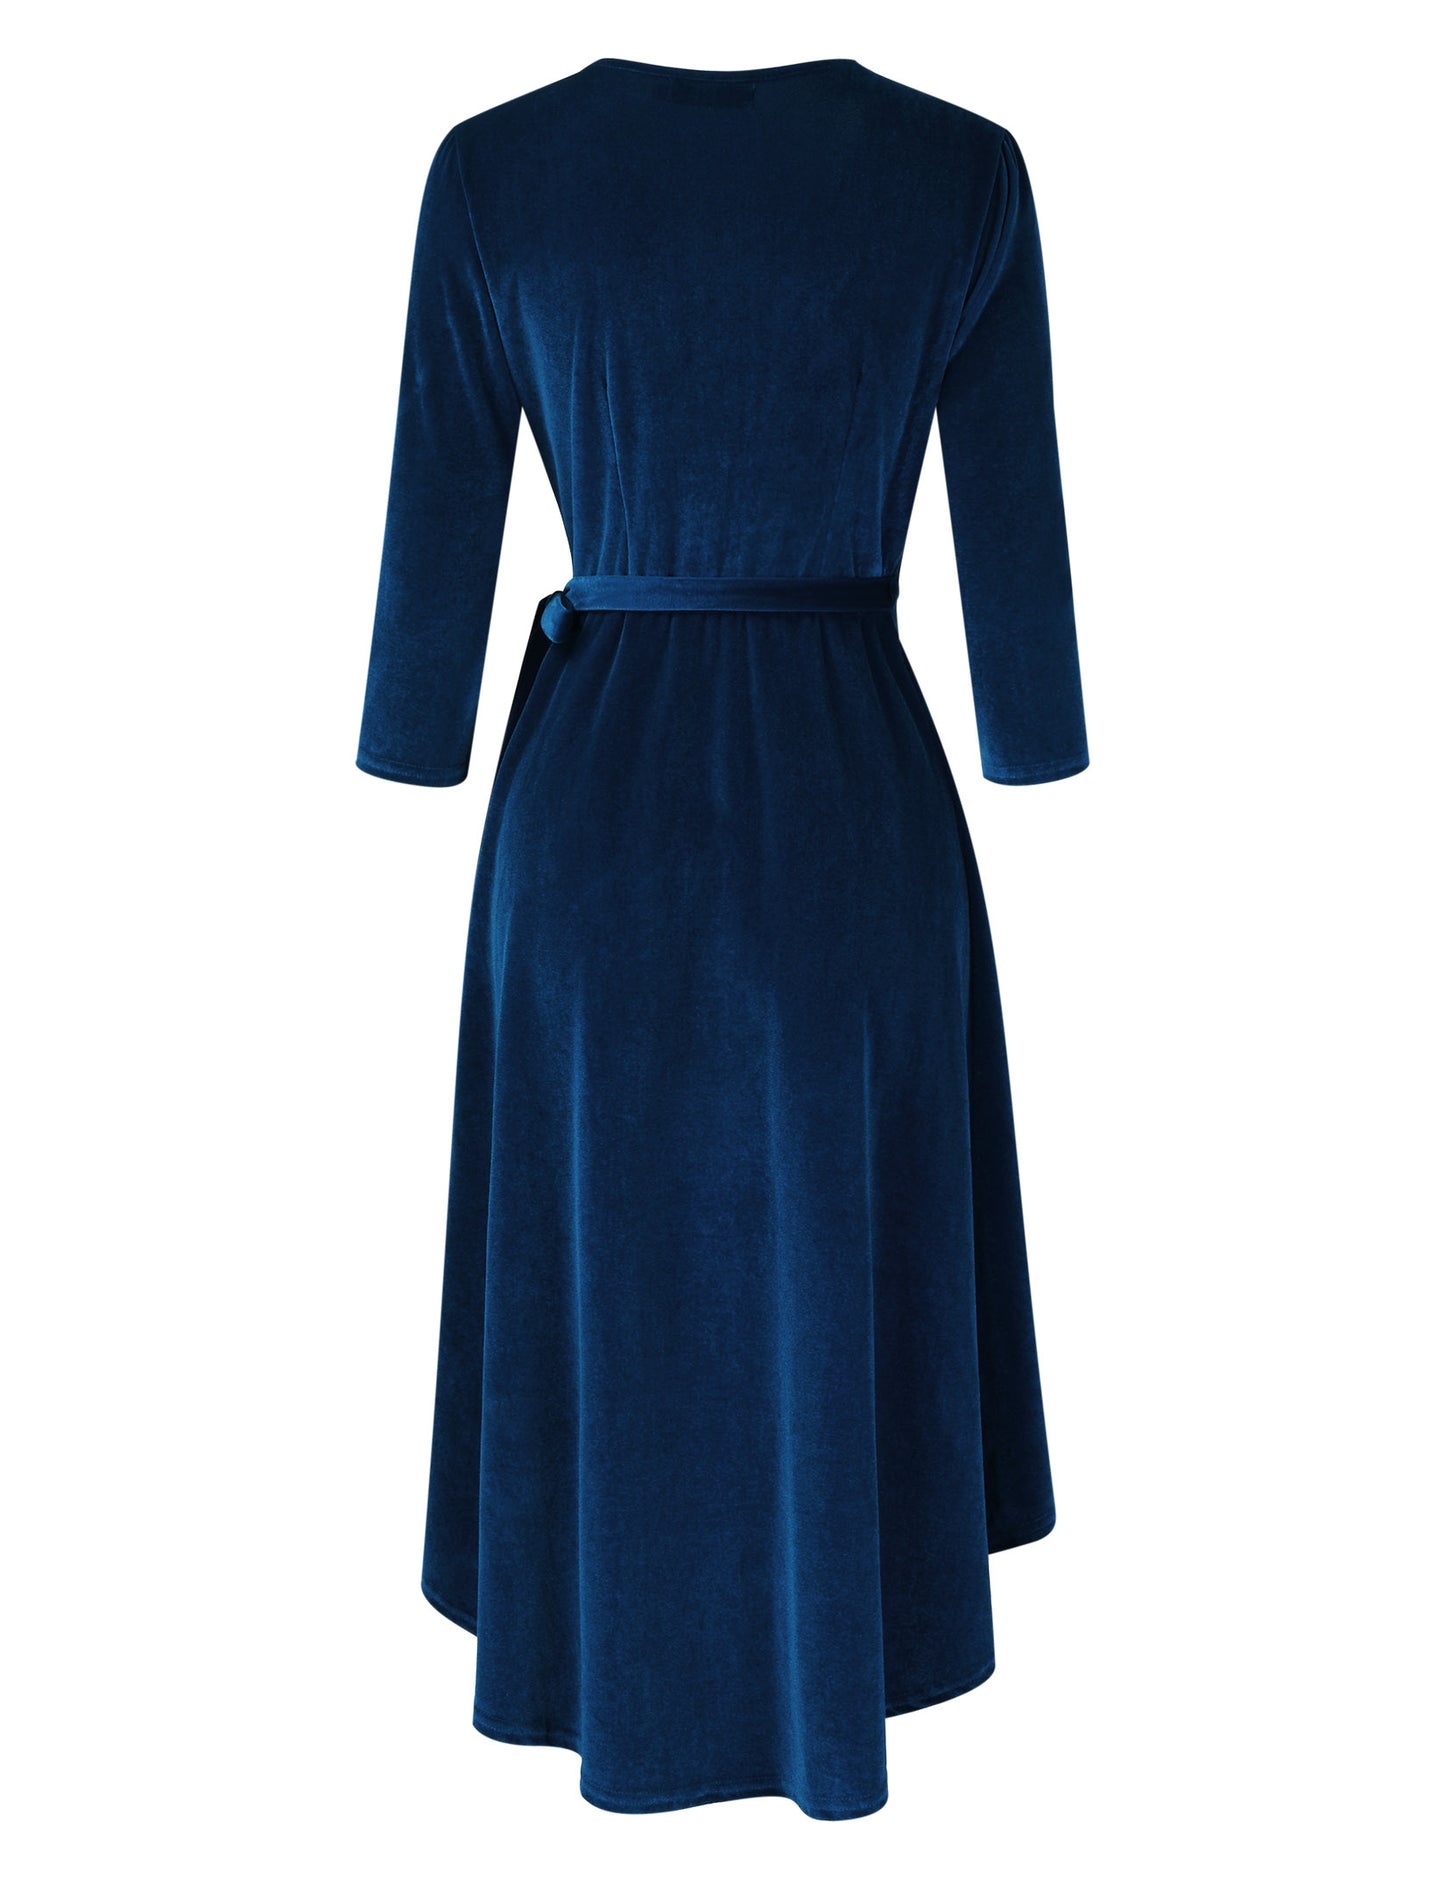 YESFASHION Women's Velvet V-Neck Long Sleeve Casual Party Dress Dark blue